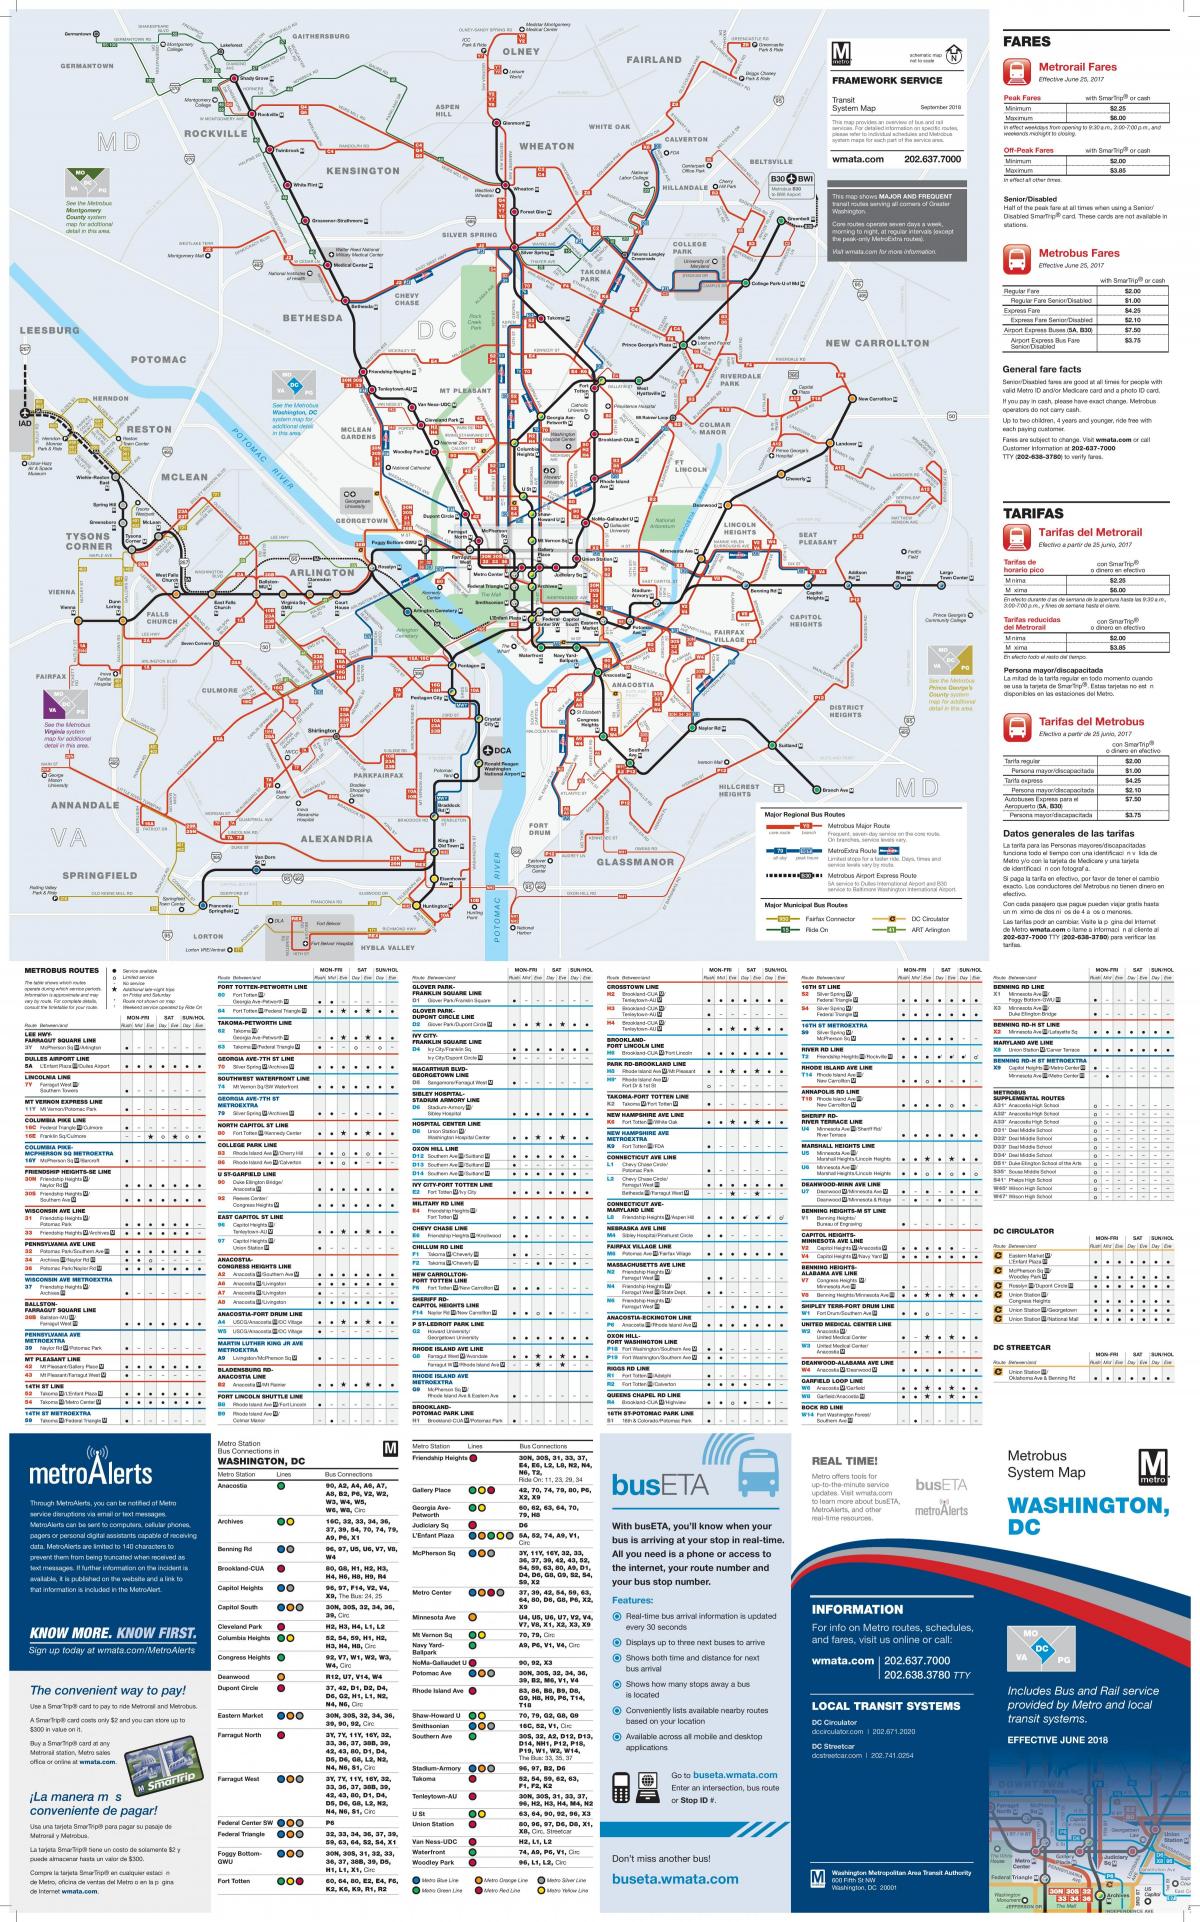 Plan des stations bus de Washington DC